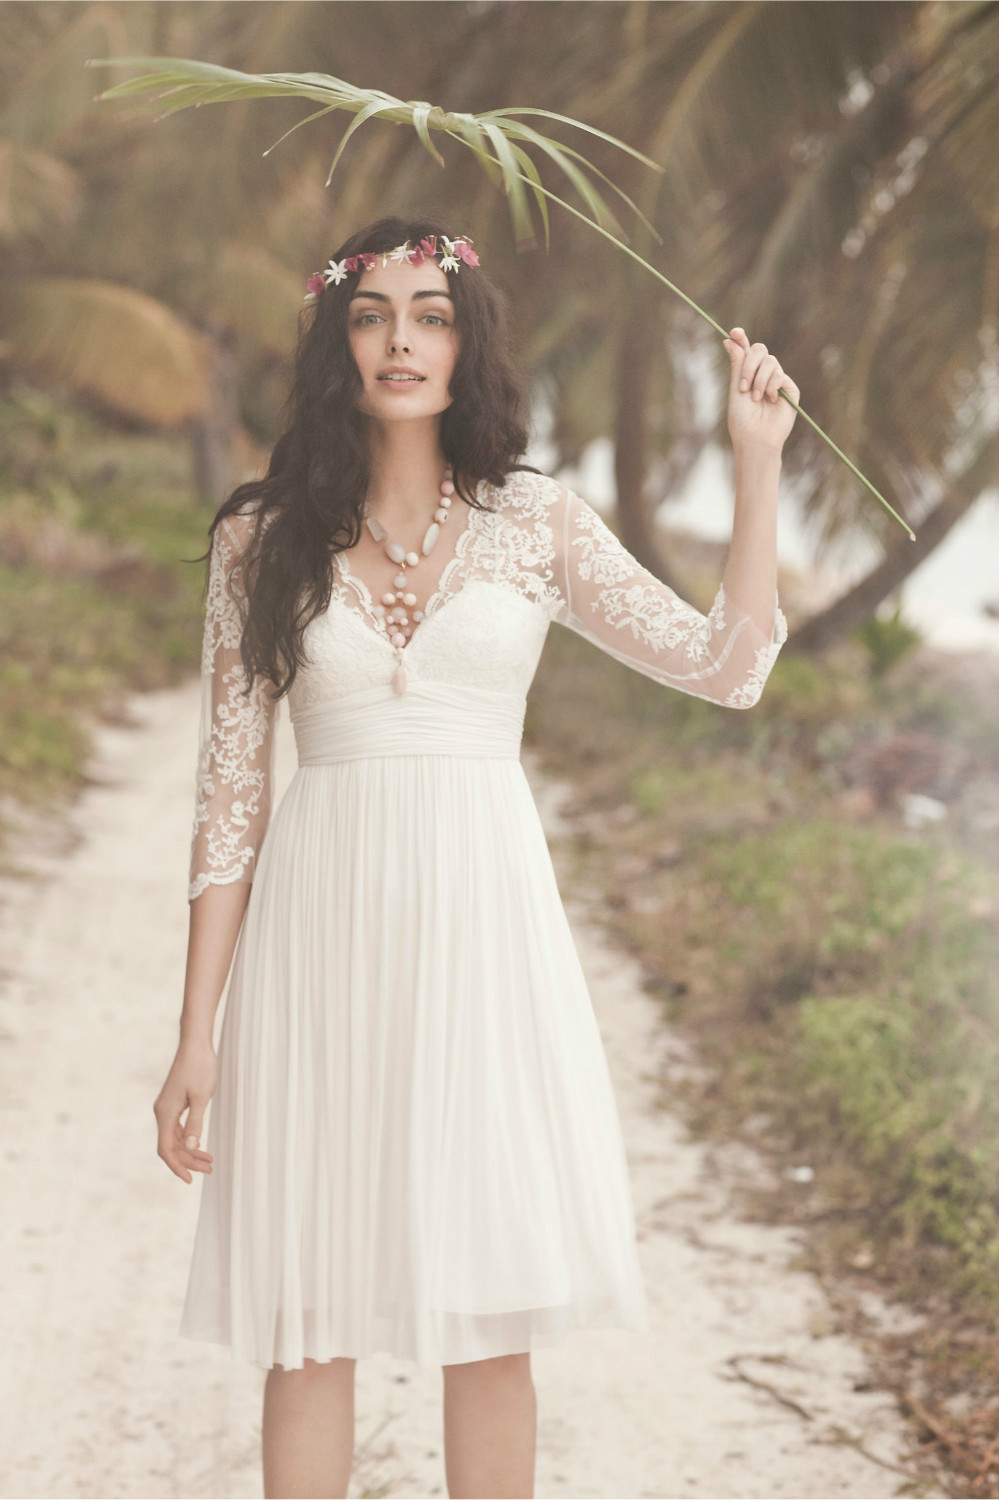  Design White/Ivory VNeck Lace Sheath Chiffon 3/4 Sleeve Wedding Dress